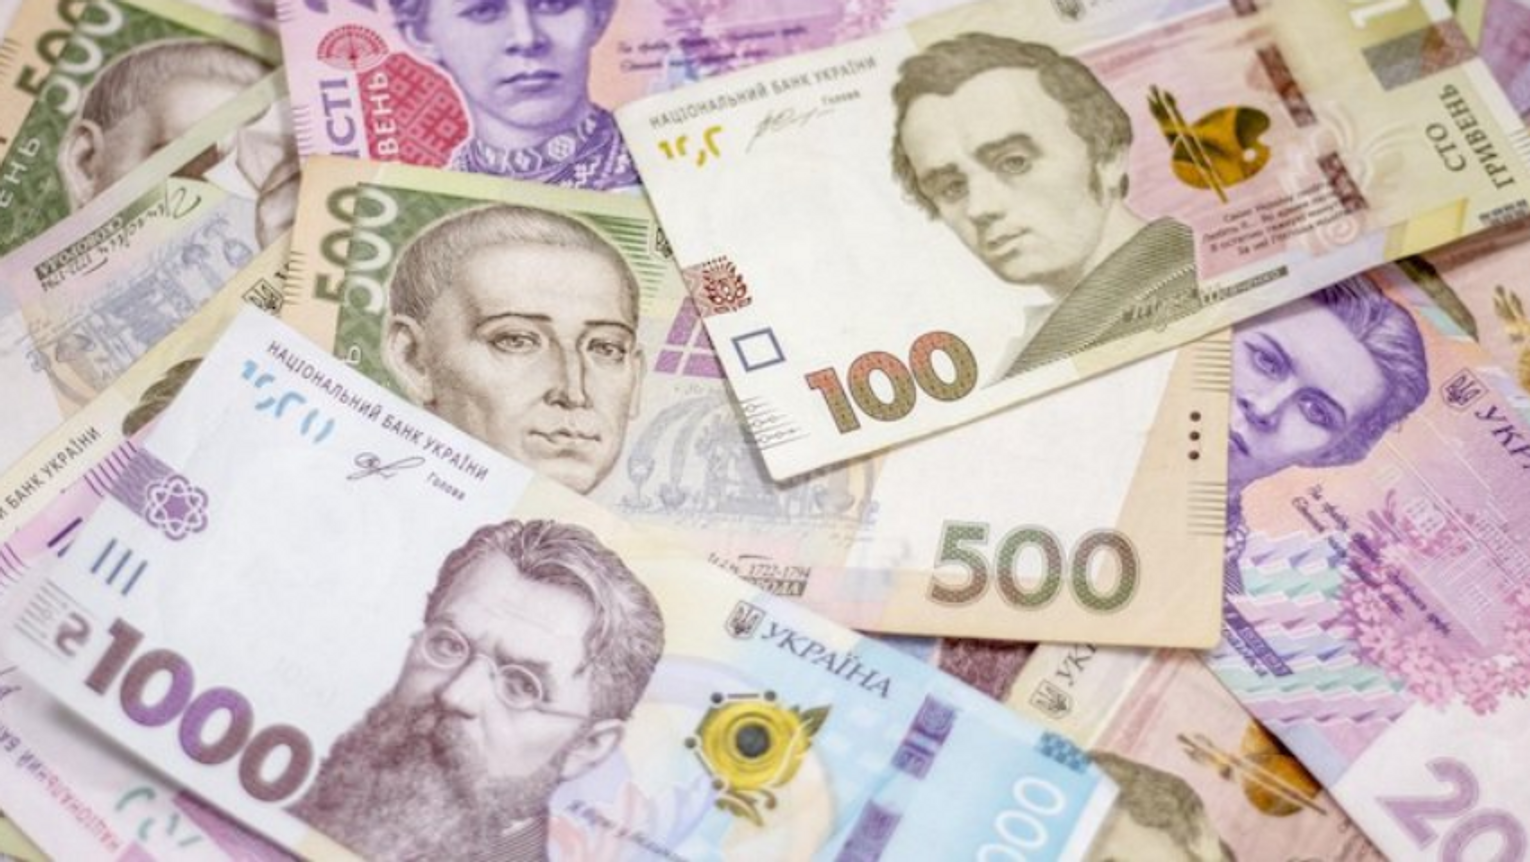 НБУ сообщил, где получить наличные деньги (список, суммы) Новости Украины